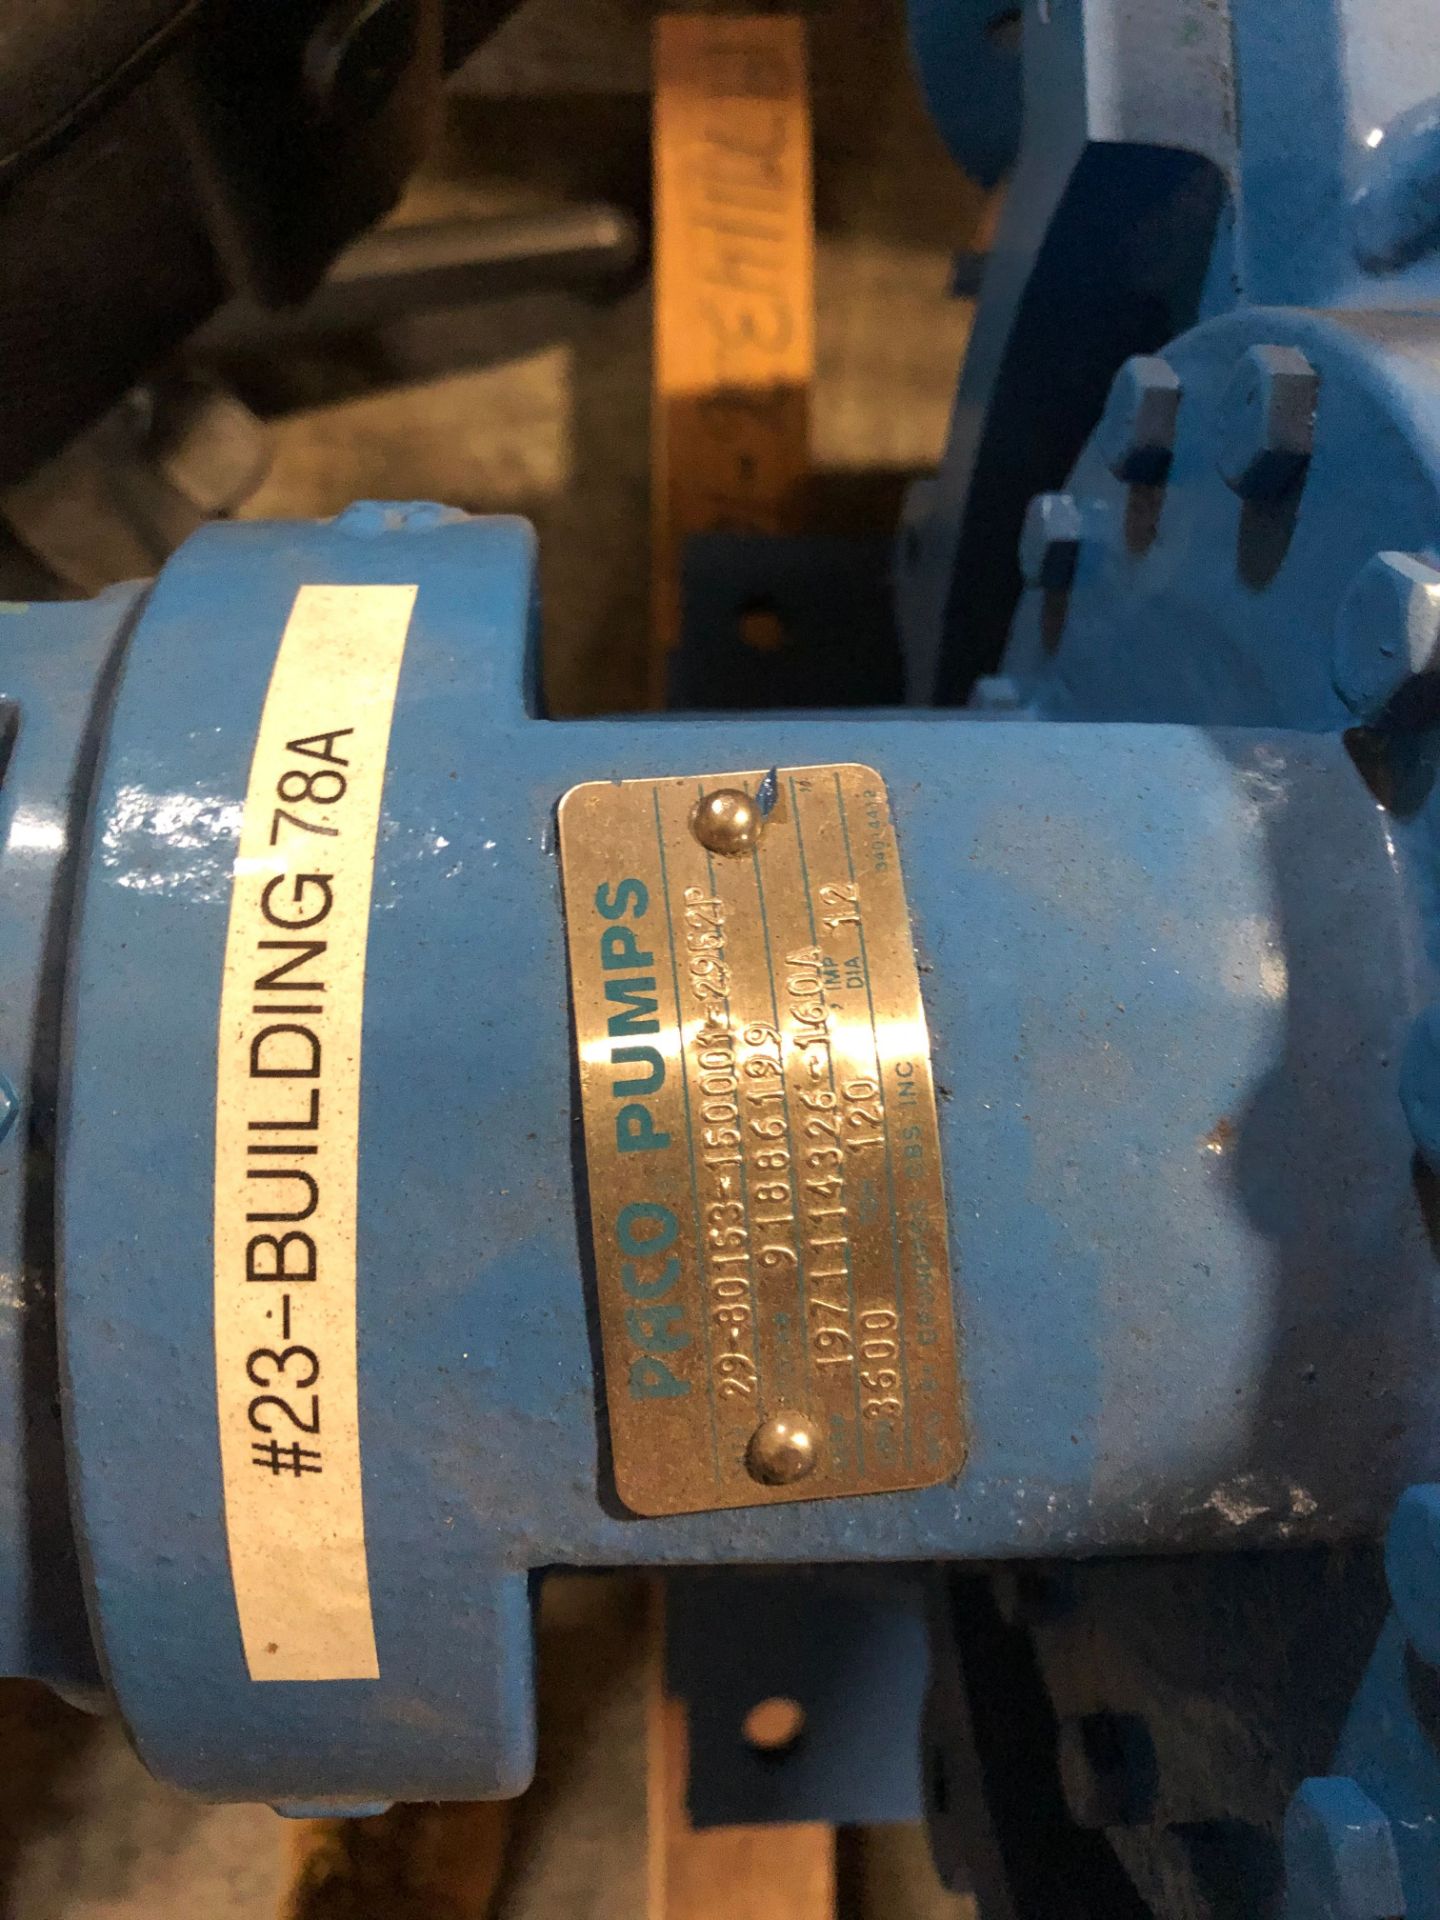 paco pump serial numbers